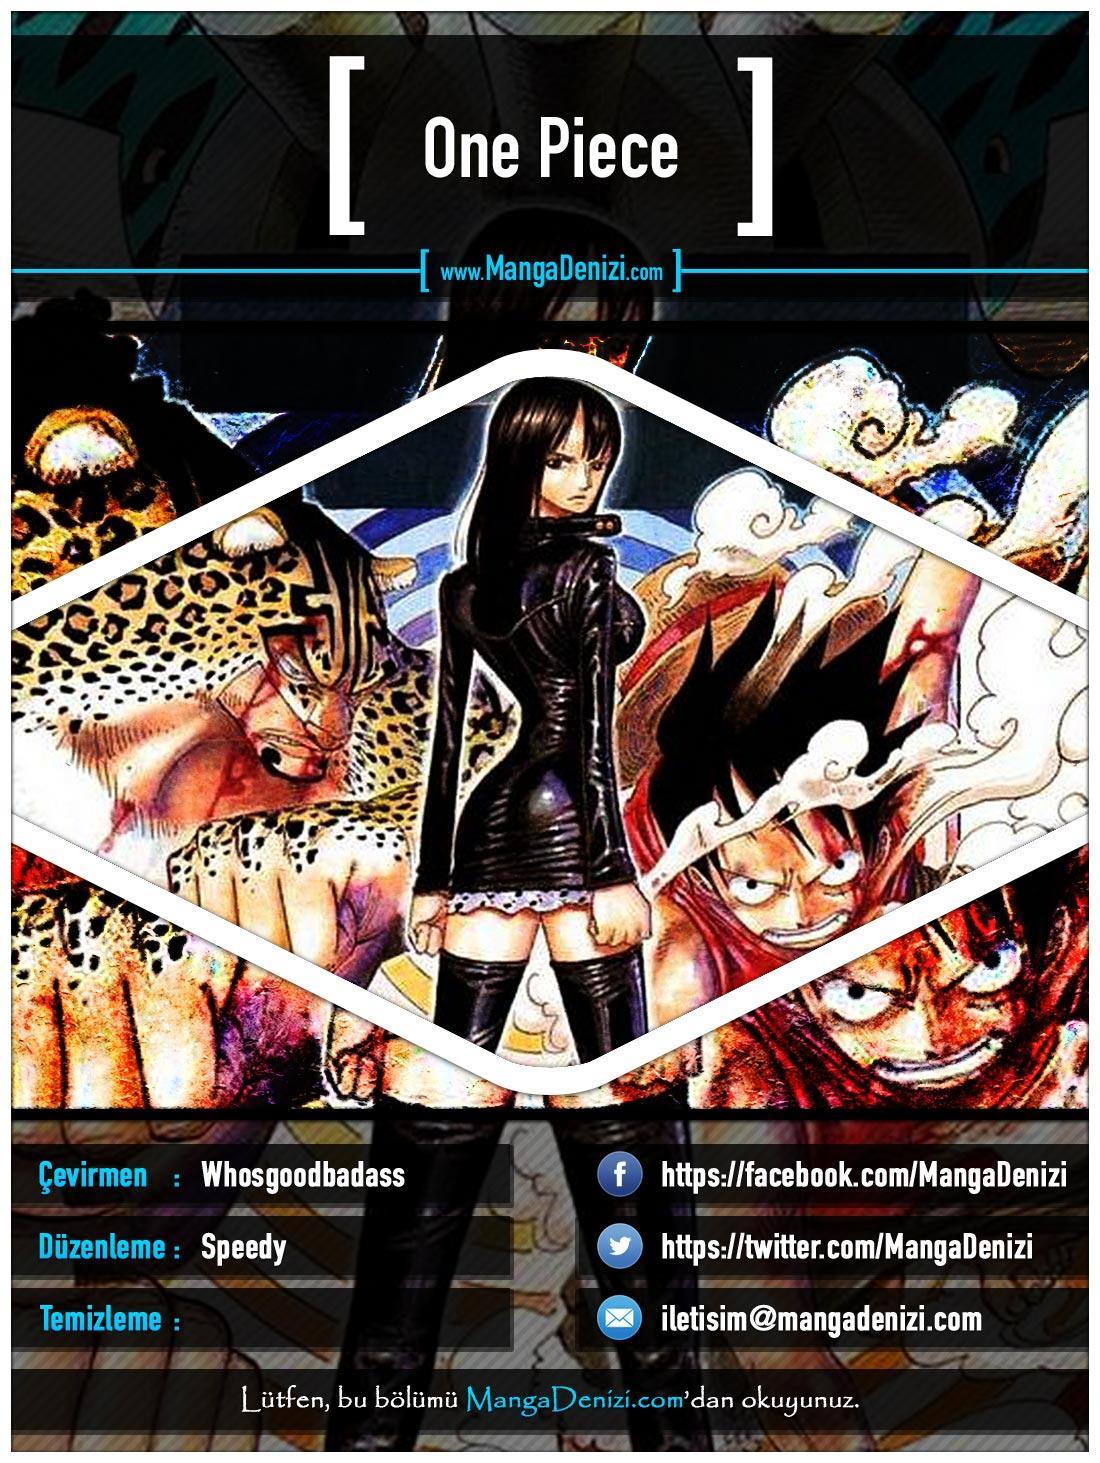 One Piece [Renkli] mangasının 0414 bölümünün 1. sayfasını okuyorsunuz.